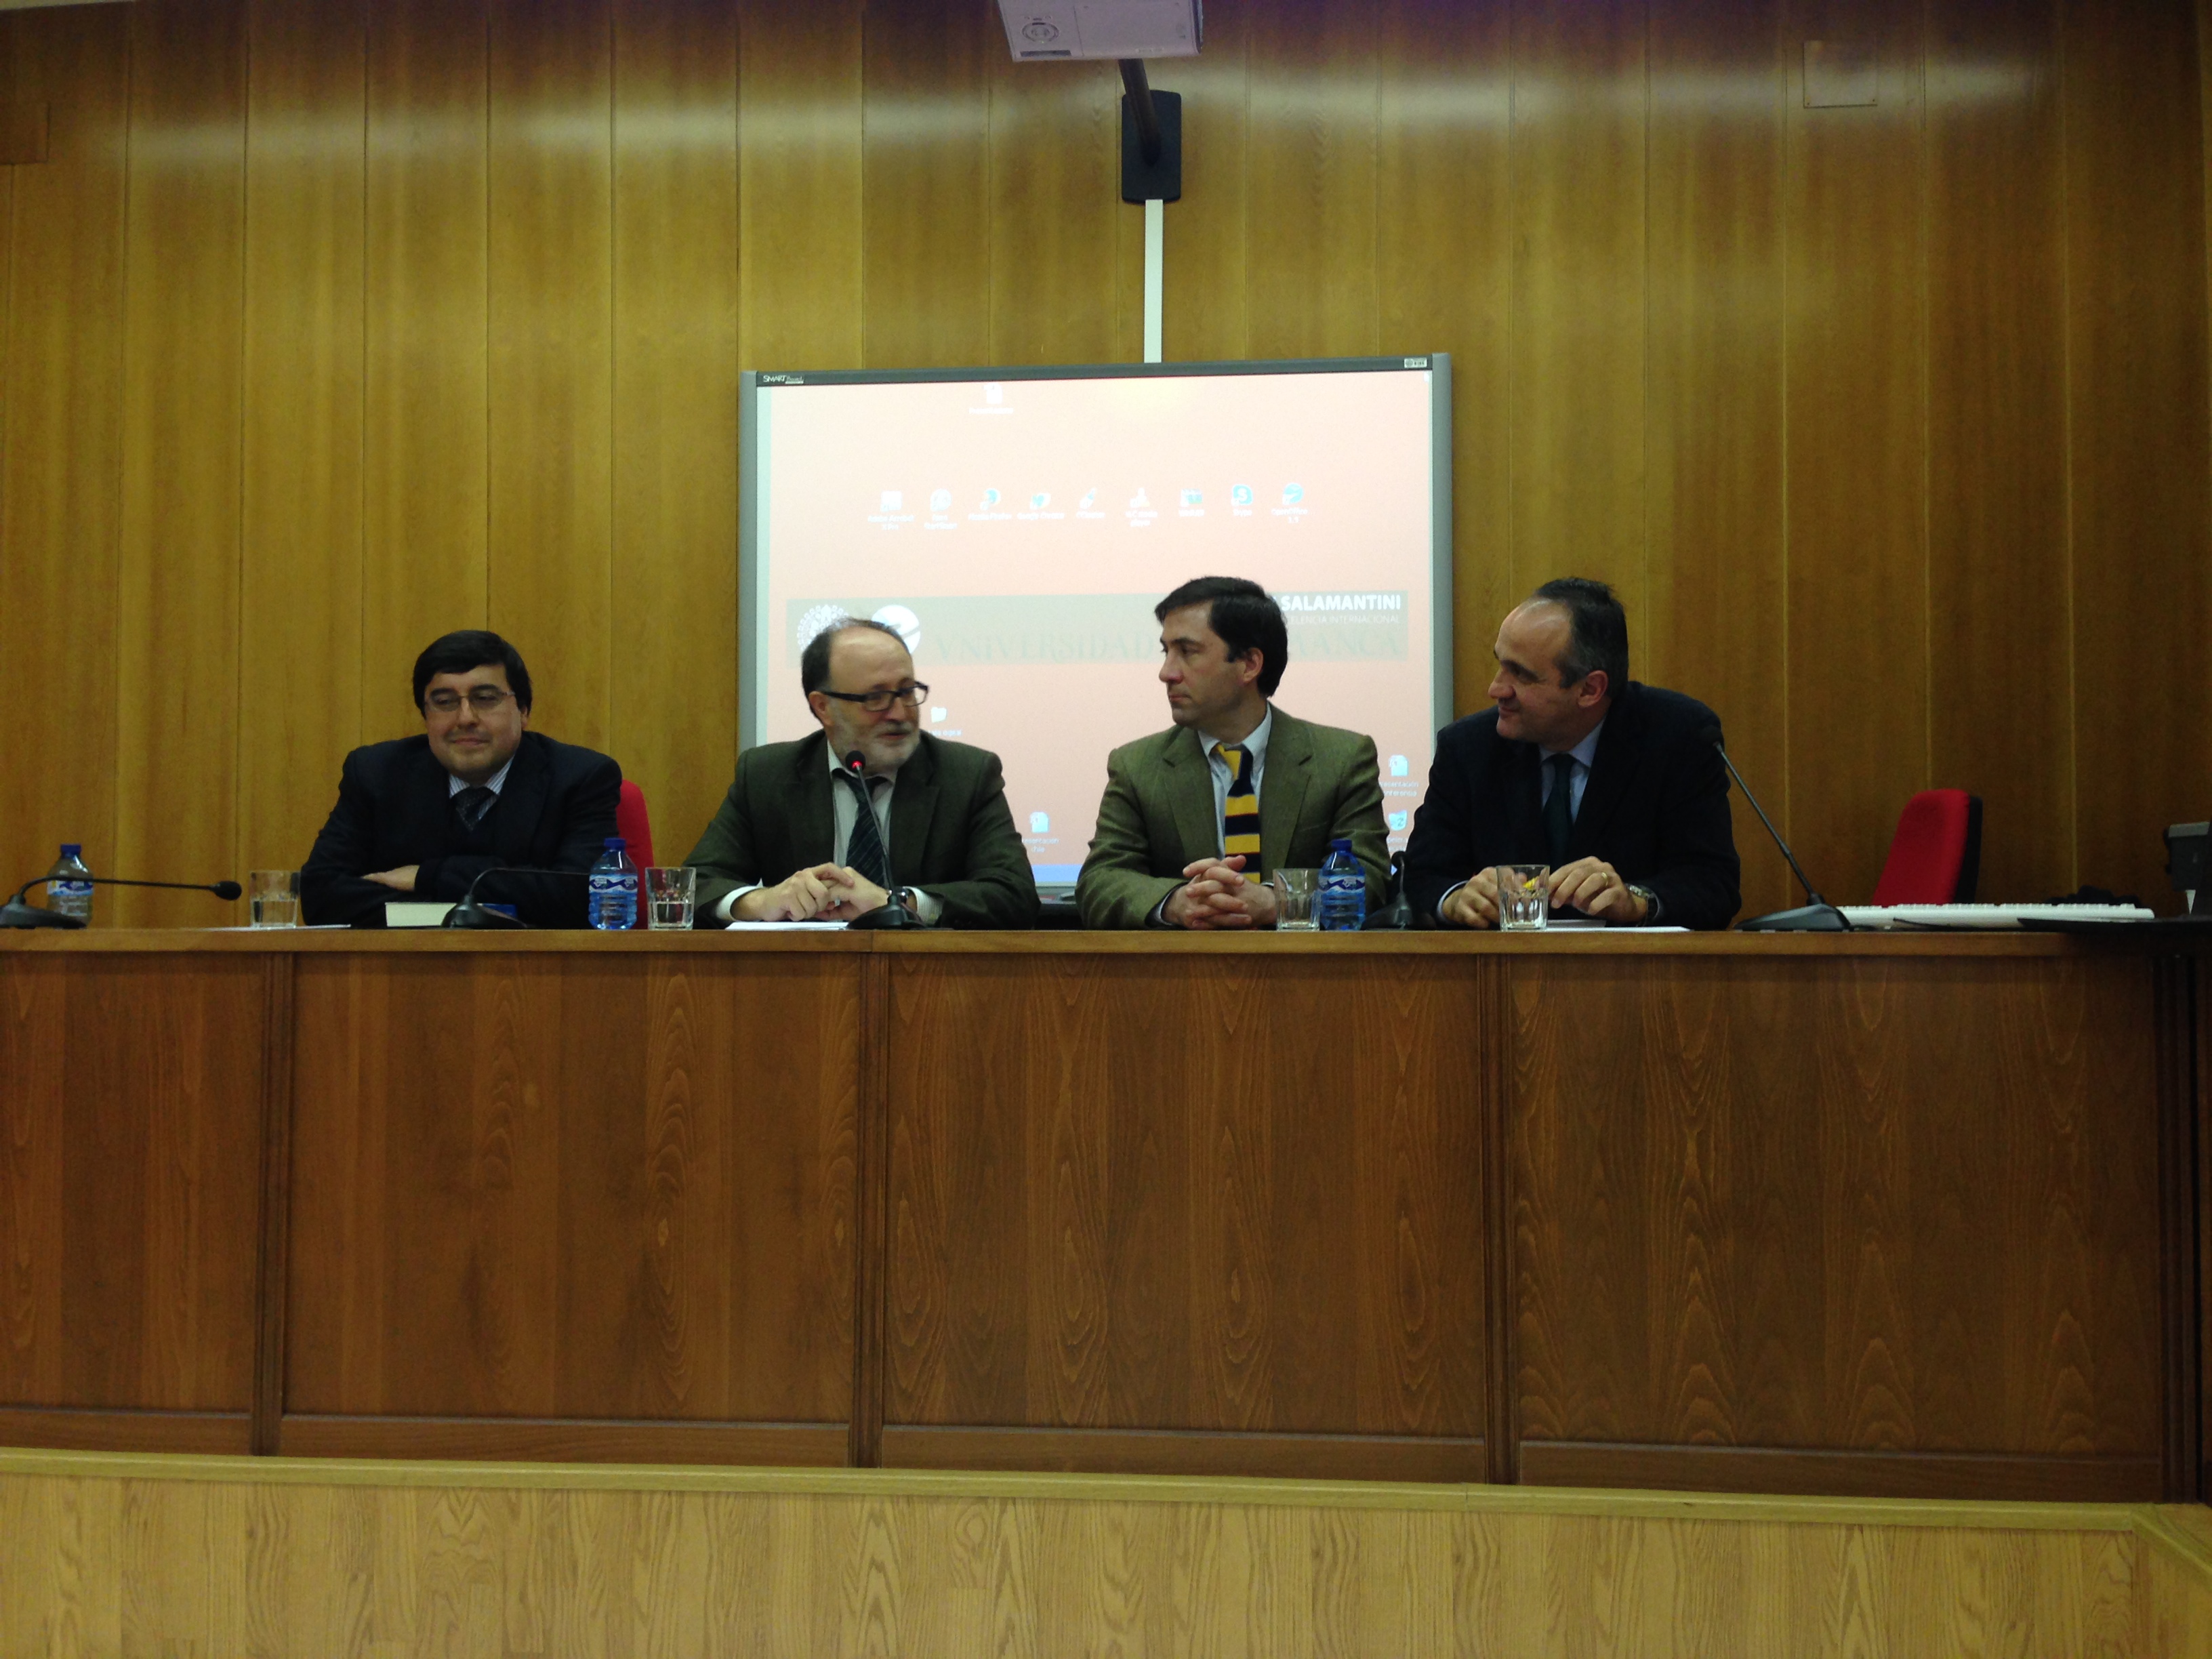 El seminario ‘Urnas y Democracia’ analiza las elecciones presidenciales y legislativas en Chile